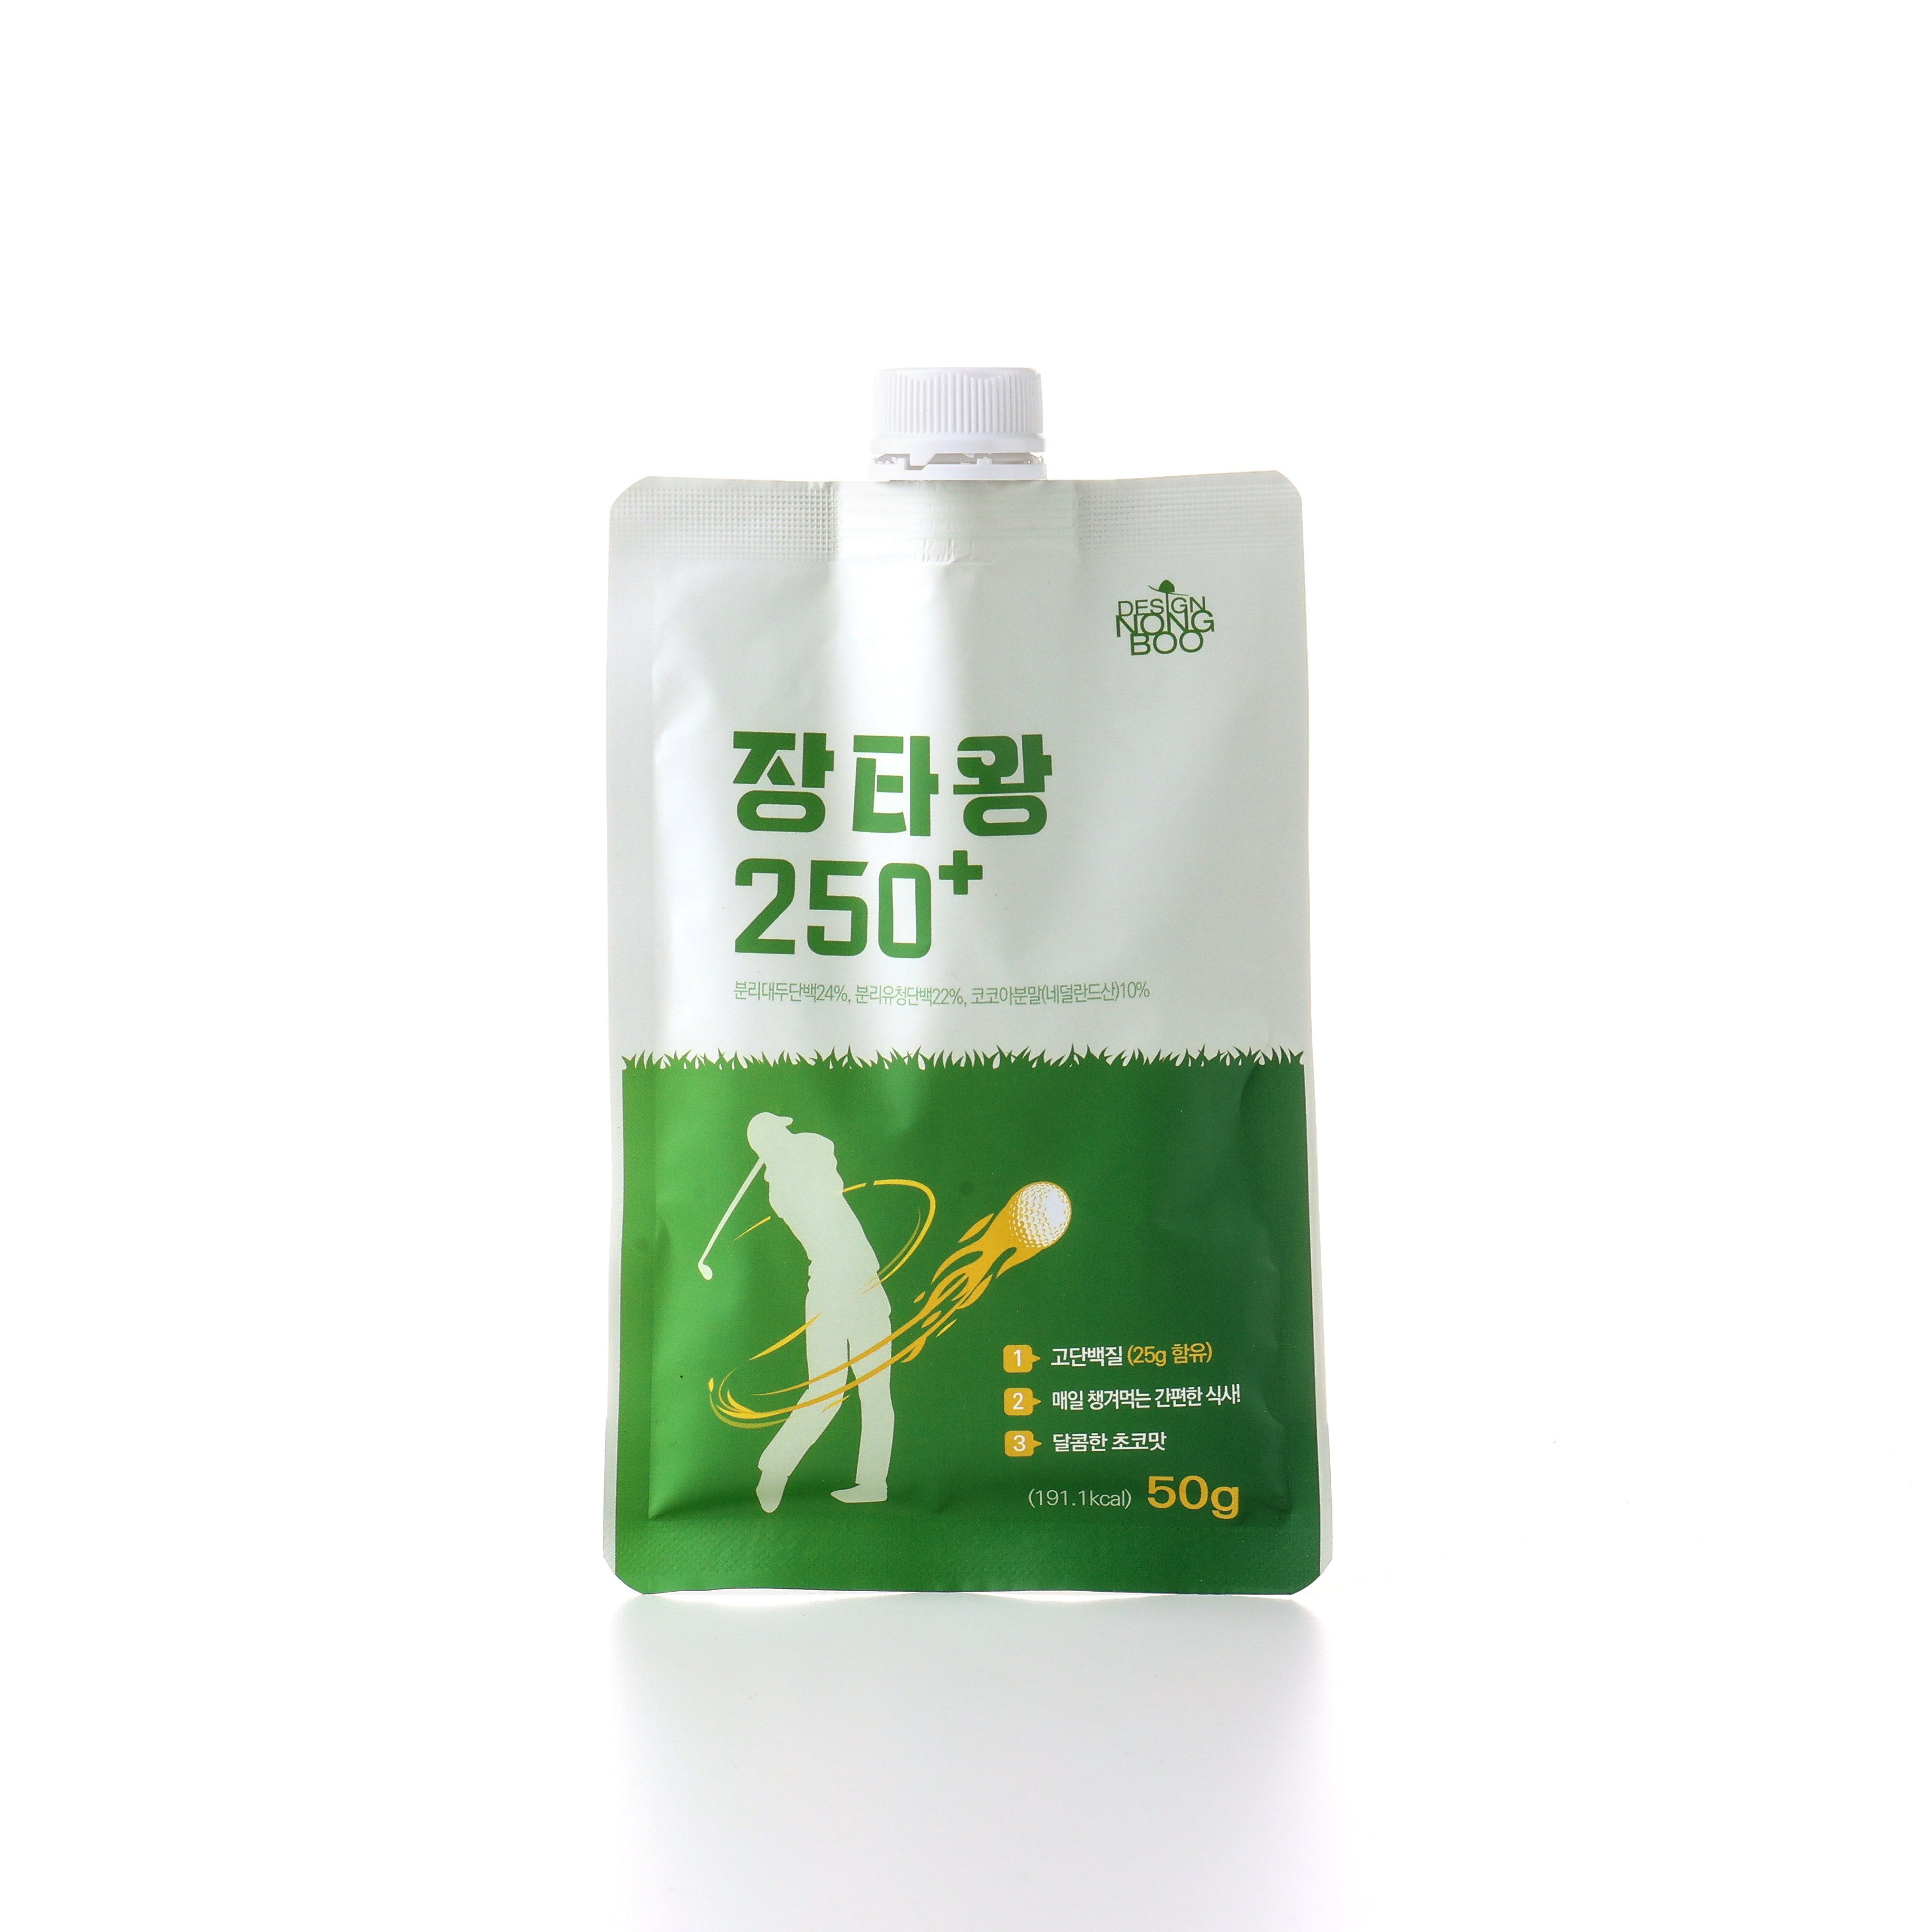 [디자인농부]장타왕 250+ 고단백 선식